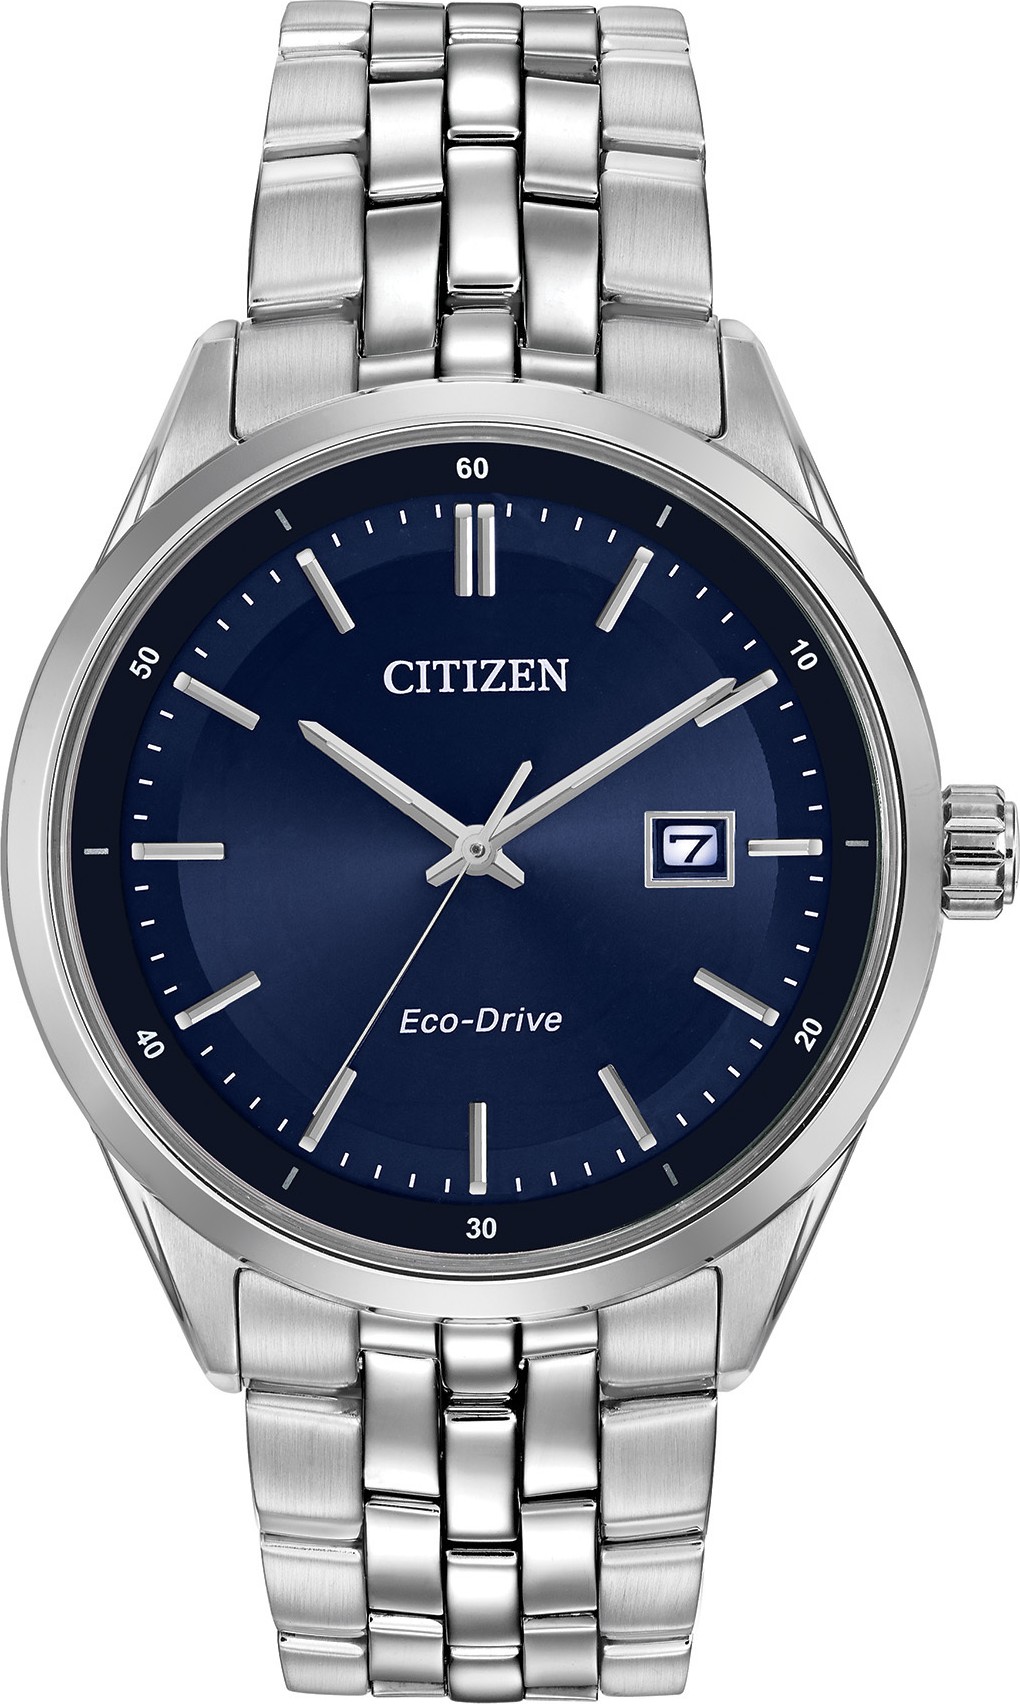 Arriba 79+ imagen citizen eco drive watch for men